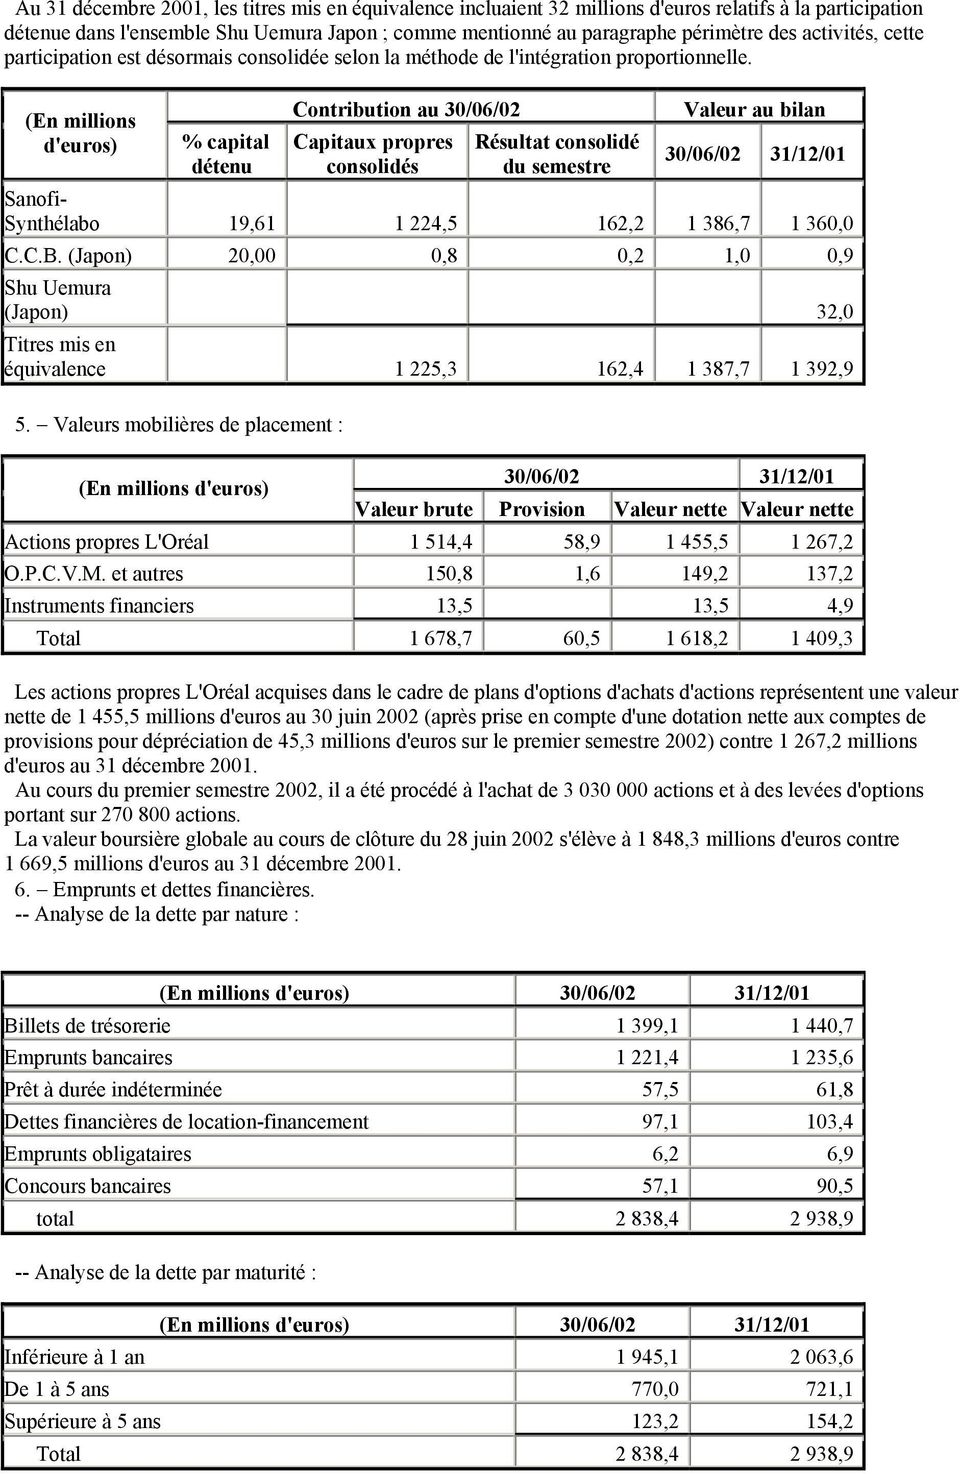 % capital détenu Contribution au 30/06/02 Capitaux propres consolidés Résultat consolidé du semestre Valeur au bilan 30/06/02 31/12/01 Sanofi- Synthélabo 19,61 1 224,5 162,2 1 386,7 1 360,0 C.C.B.